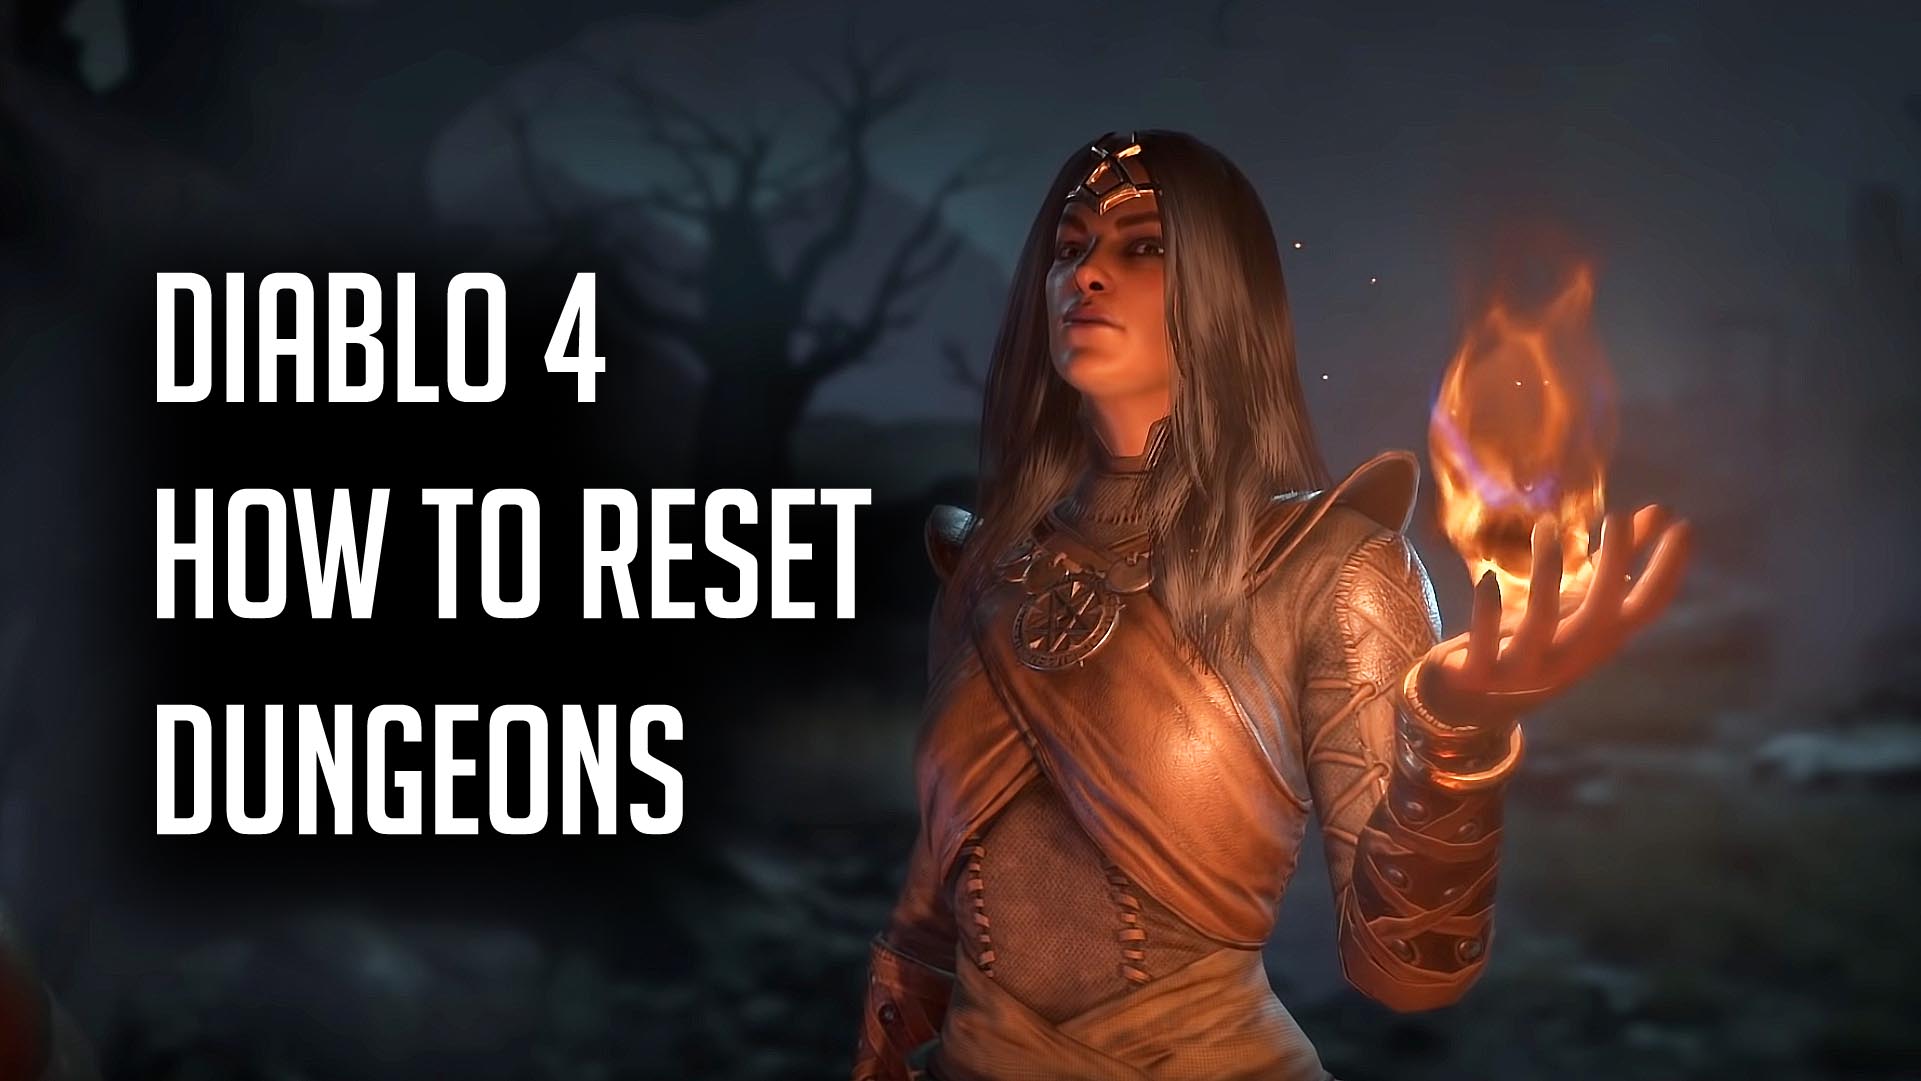 Diablo 4 How to Reset Dungeons